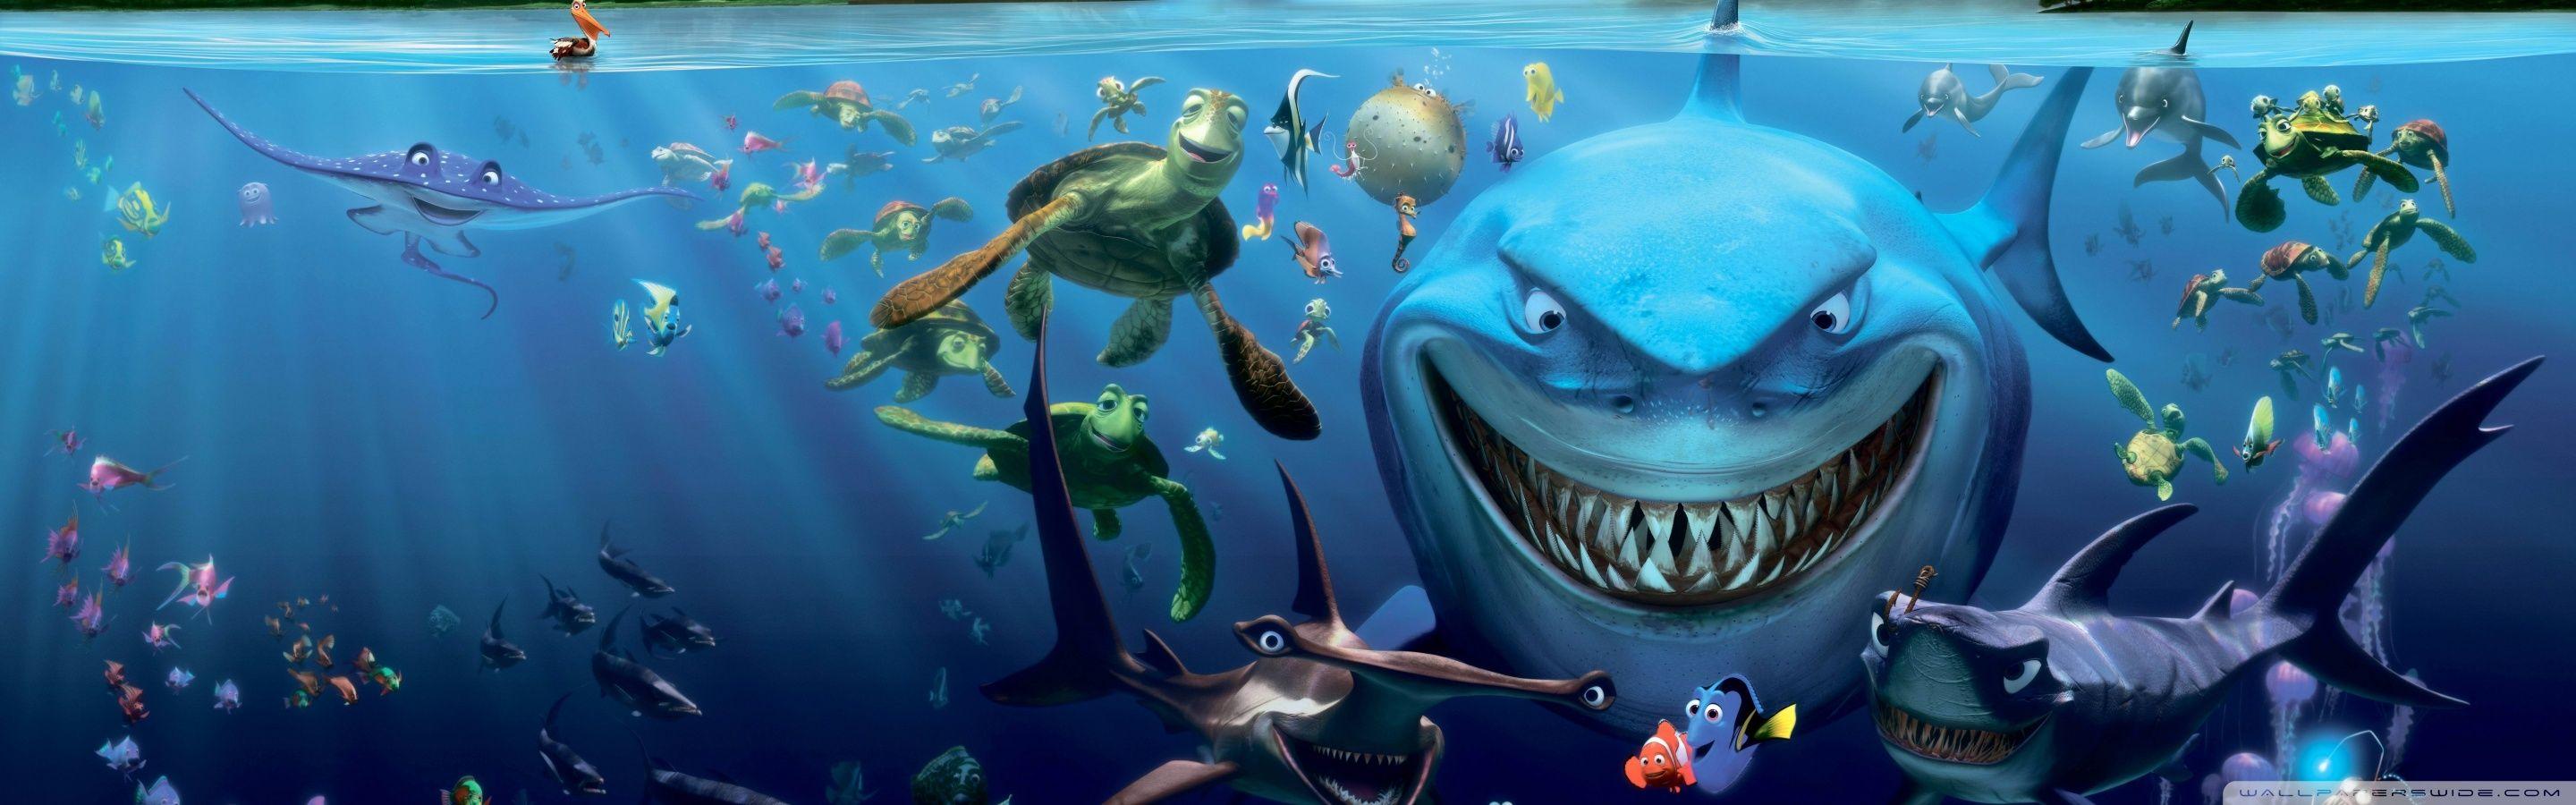 Finding Nemo Cast ❤ 4K HD Desktop Wallpaper for 4K Ultra HD TV